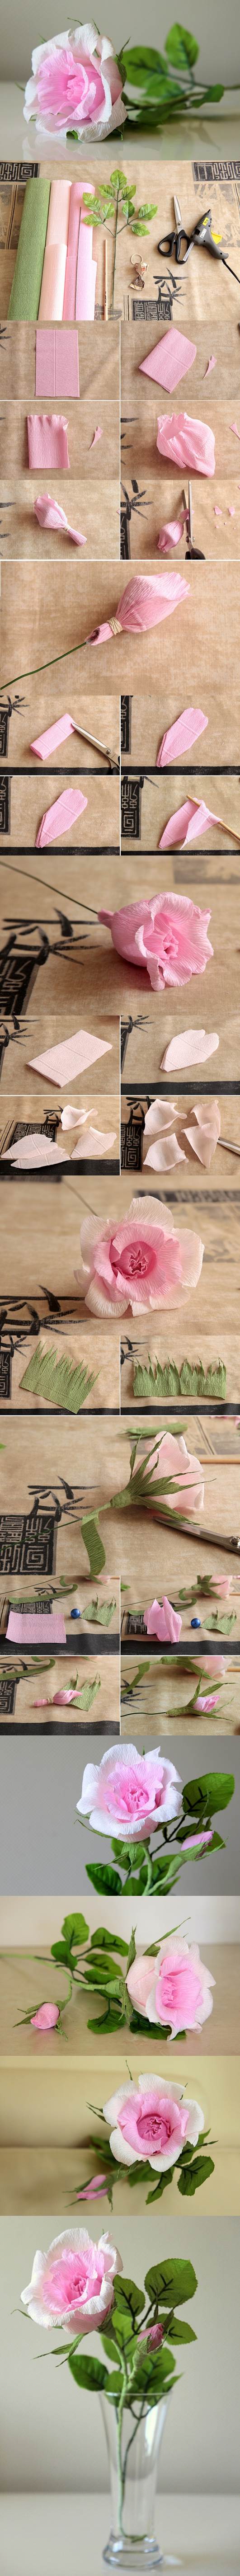 DIY Beautiful Pink Crepe Paper Rose 1